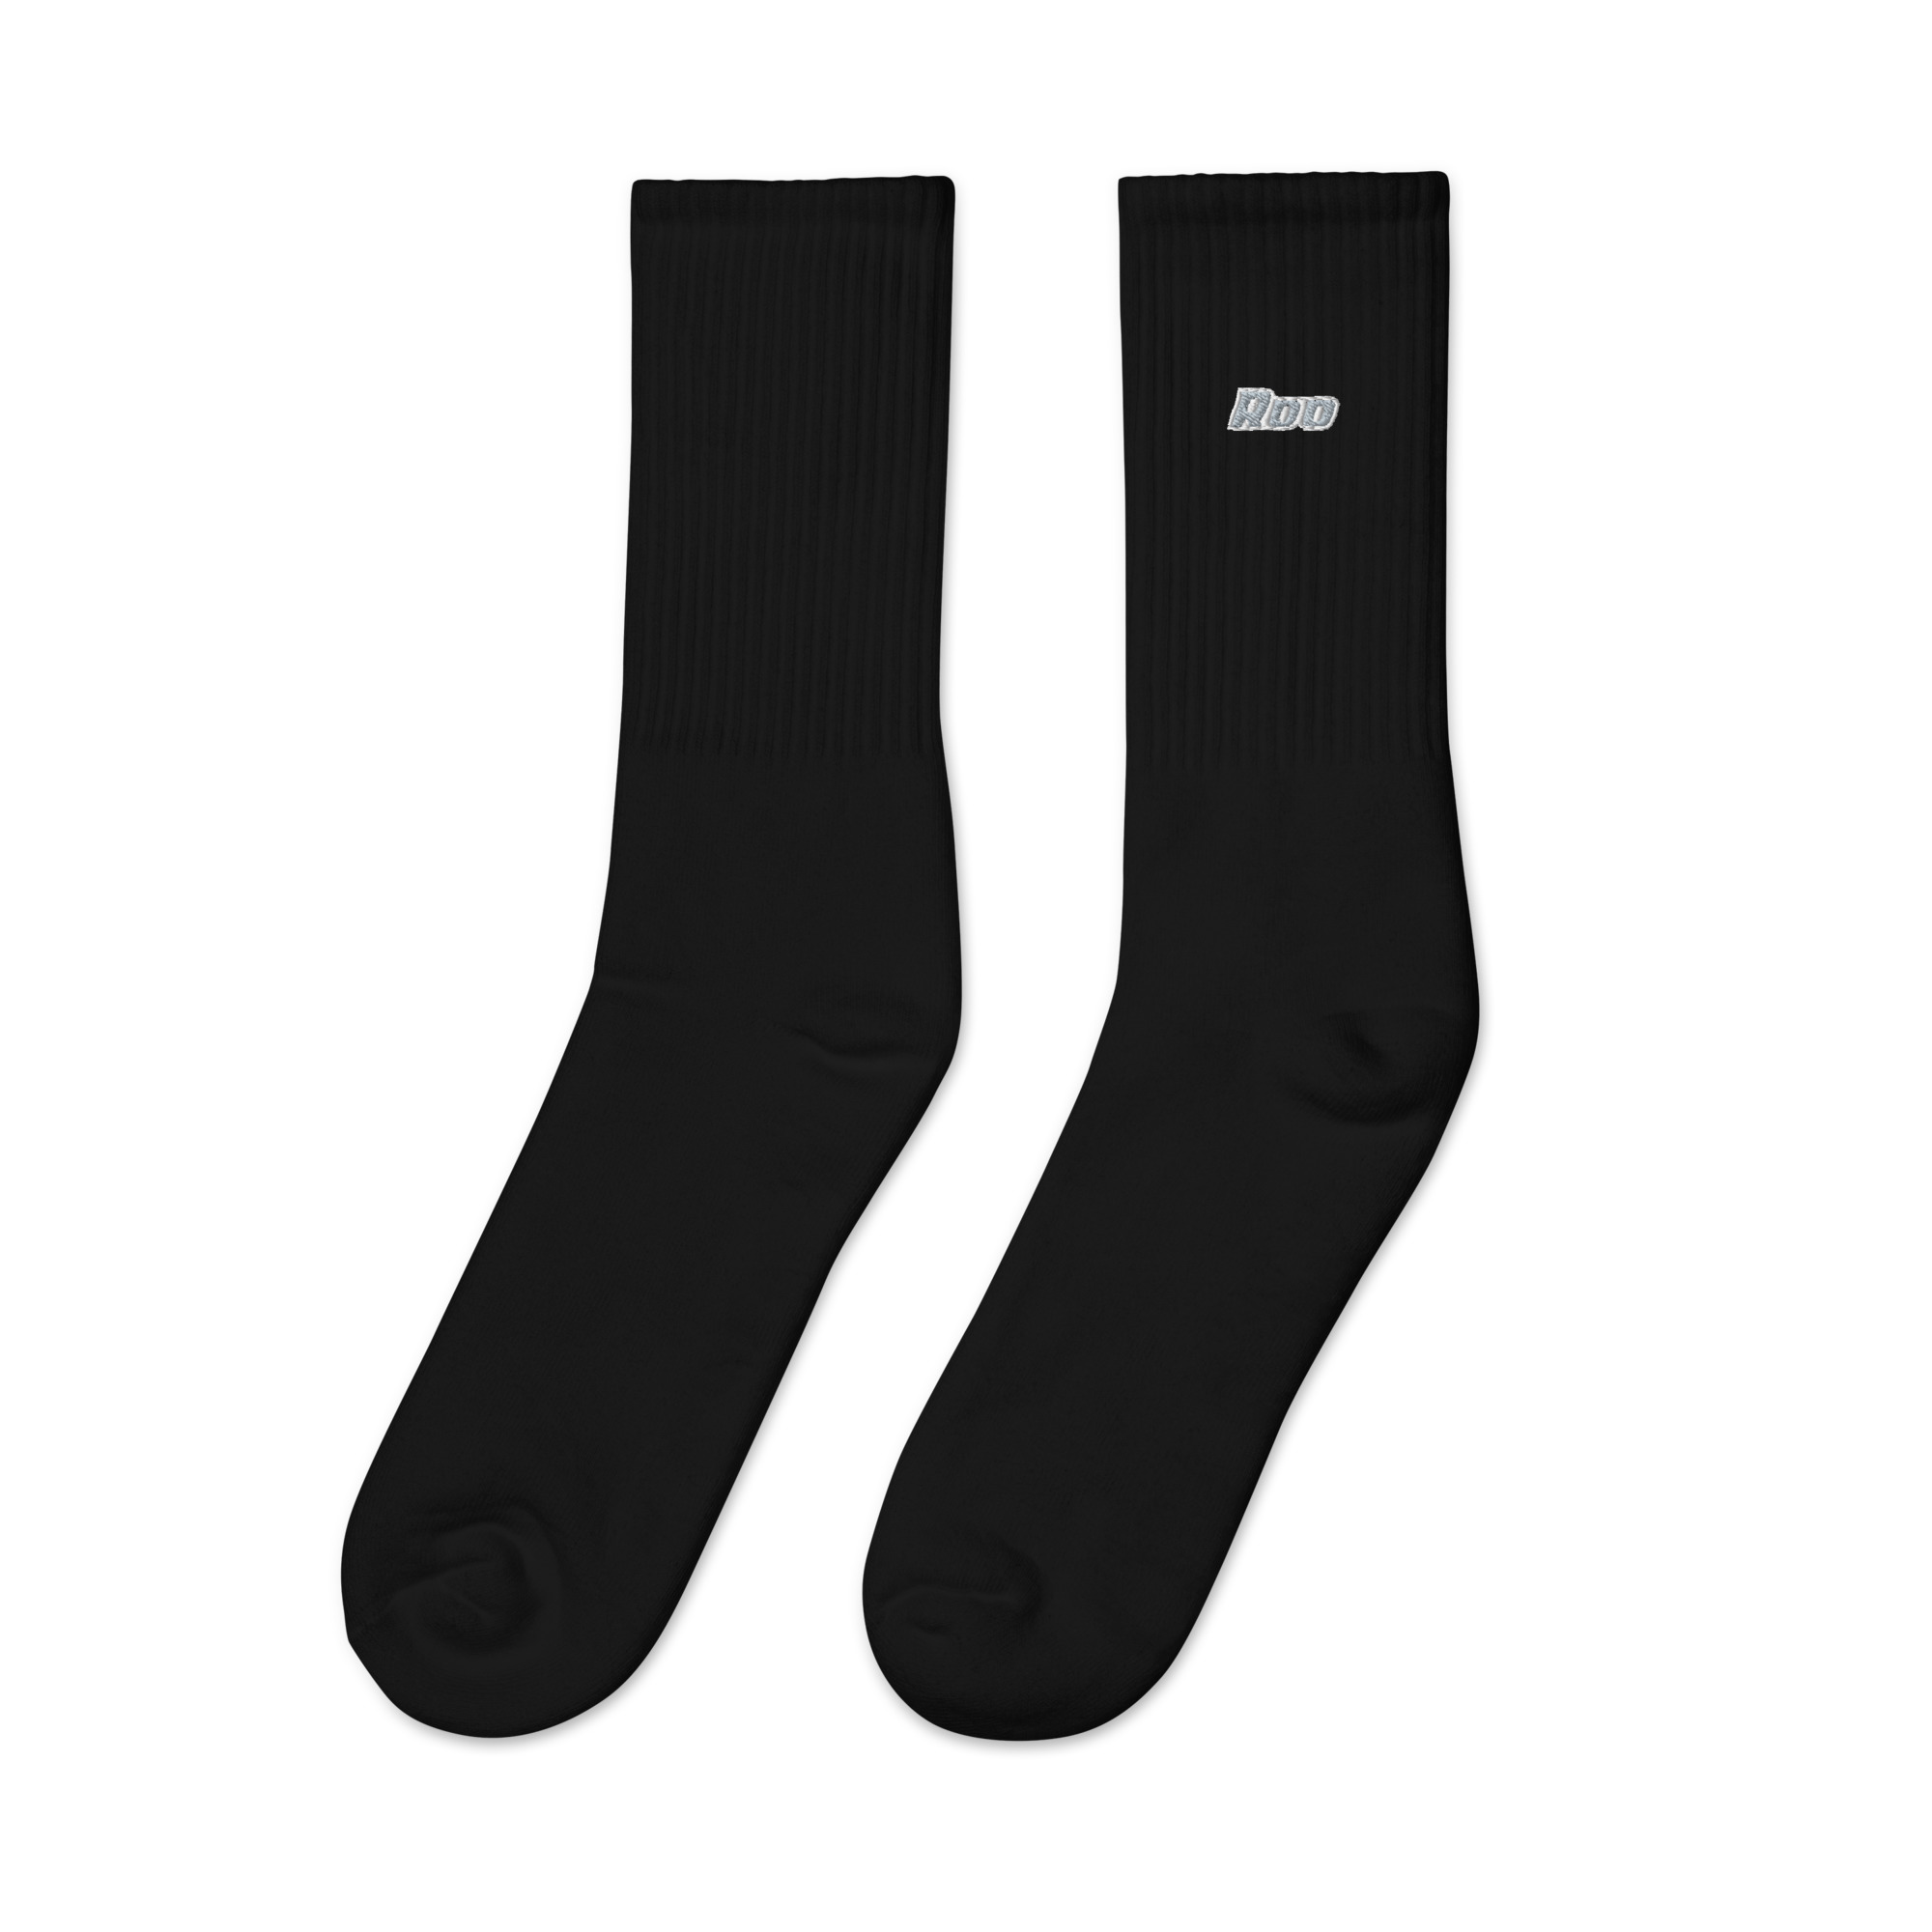 embroidered-crew-socks-black-left-6542837f8ffb0.jpg